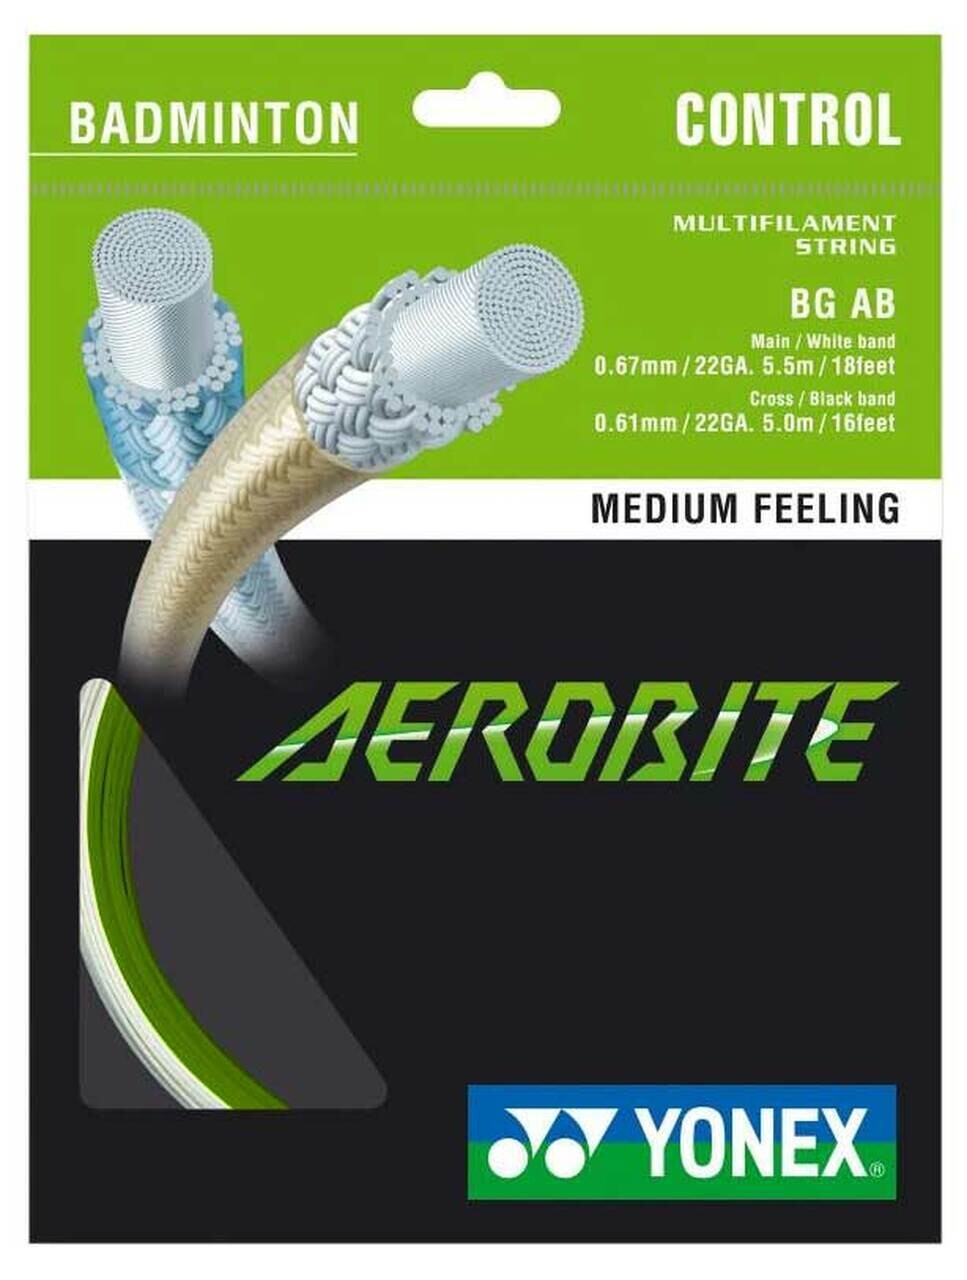 Yonex Aerobite Badminton String Set - Green/White